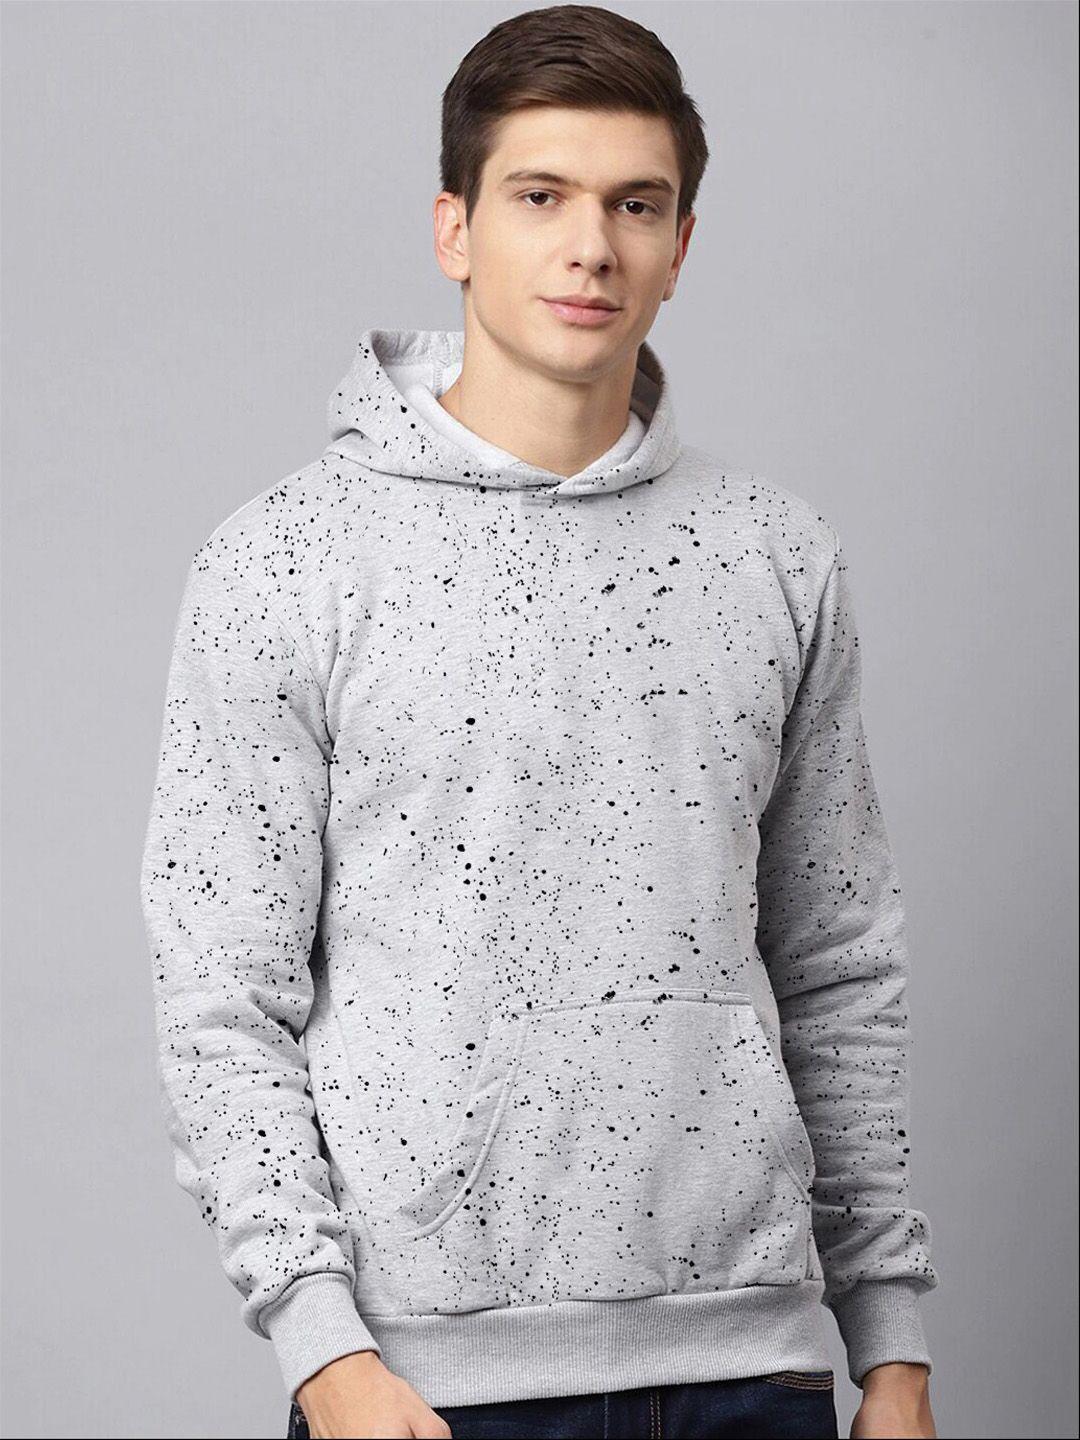 harbor-n-bay-abstract-printed-hooded-sweatshirt